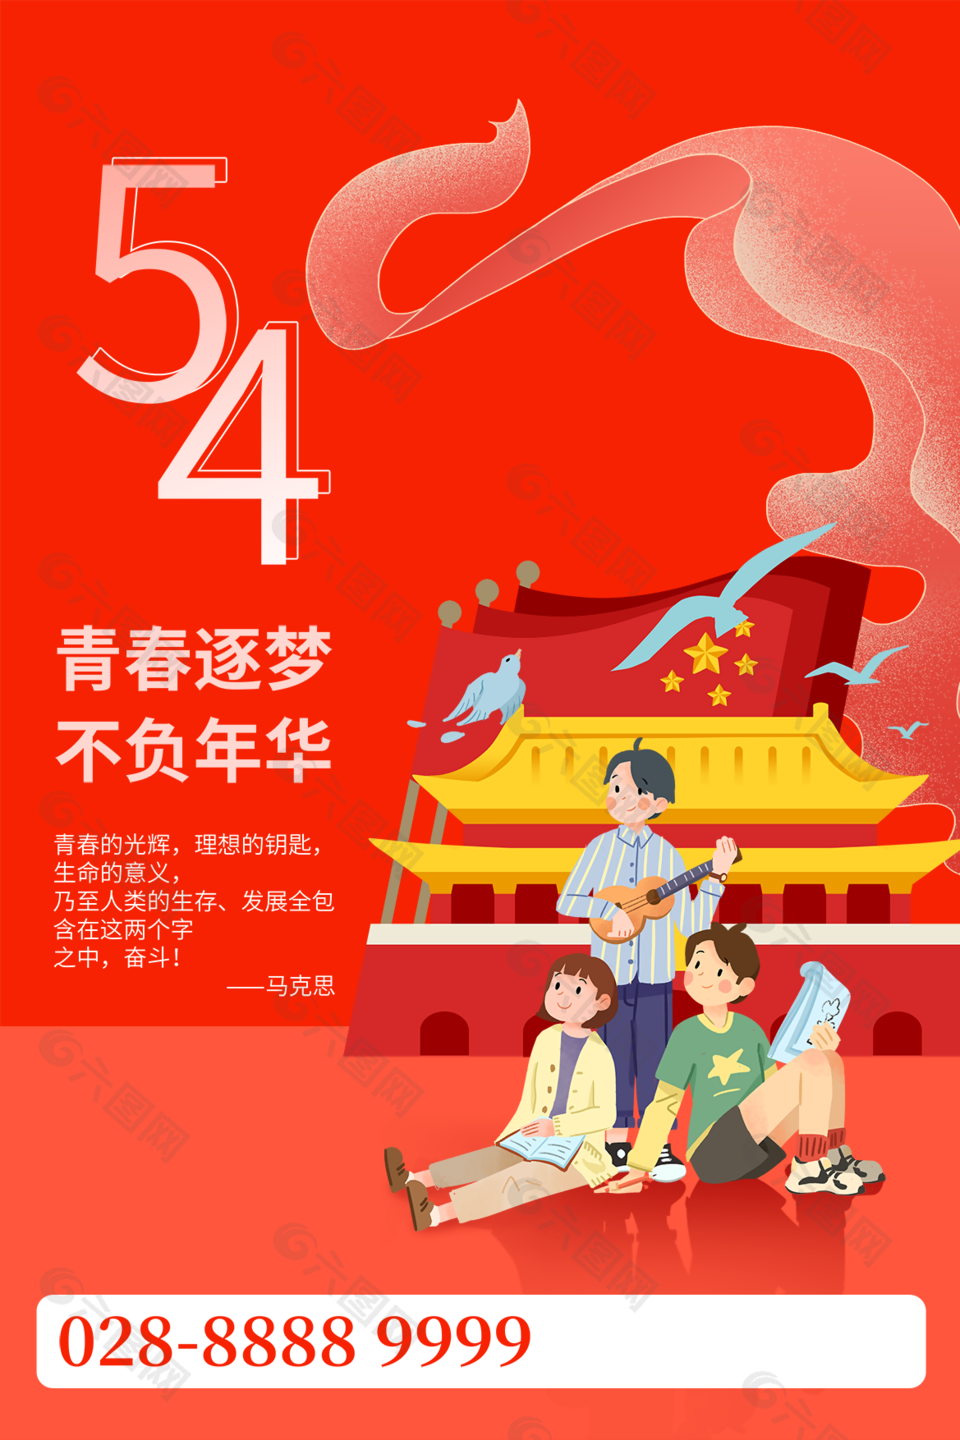 54青年节海报红色背景